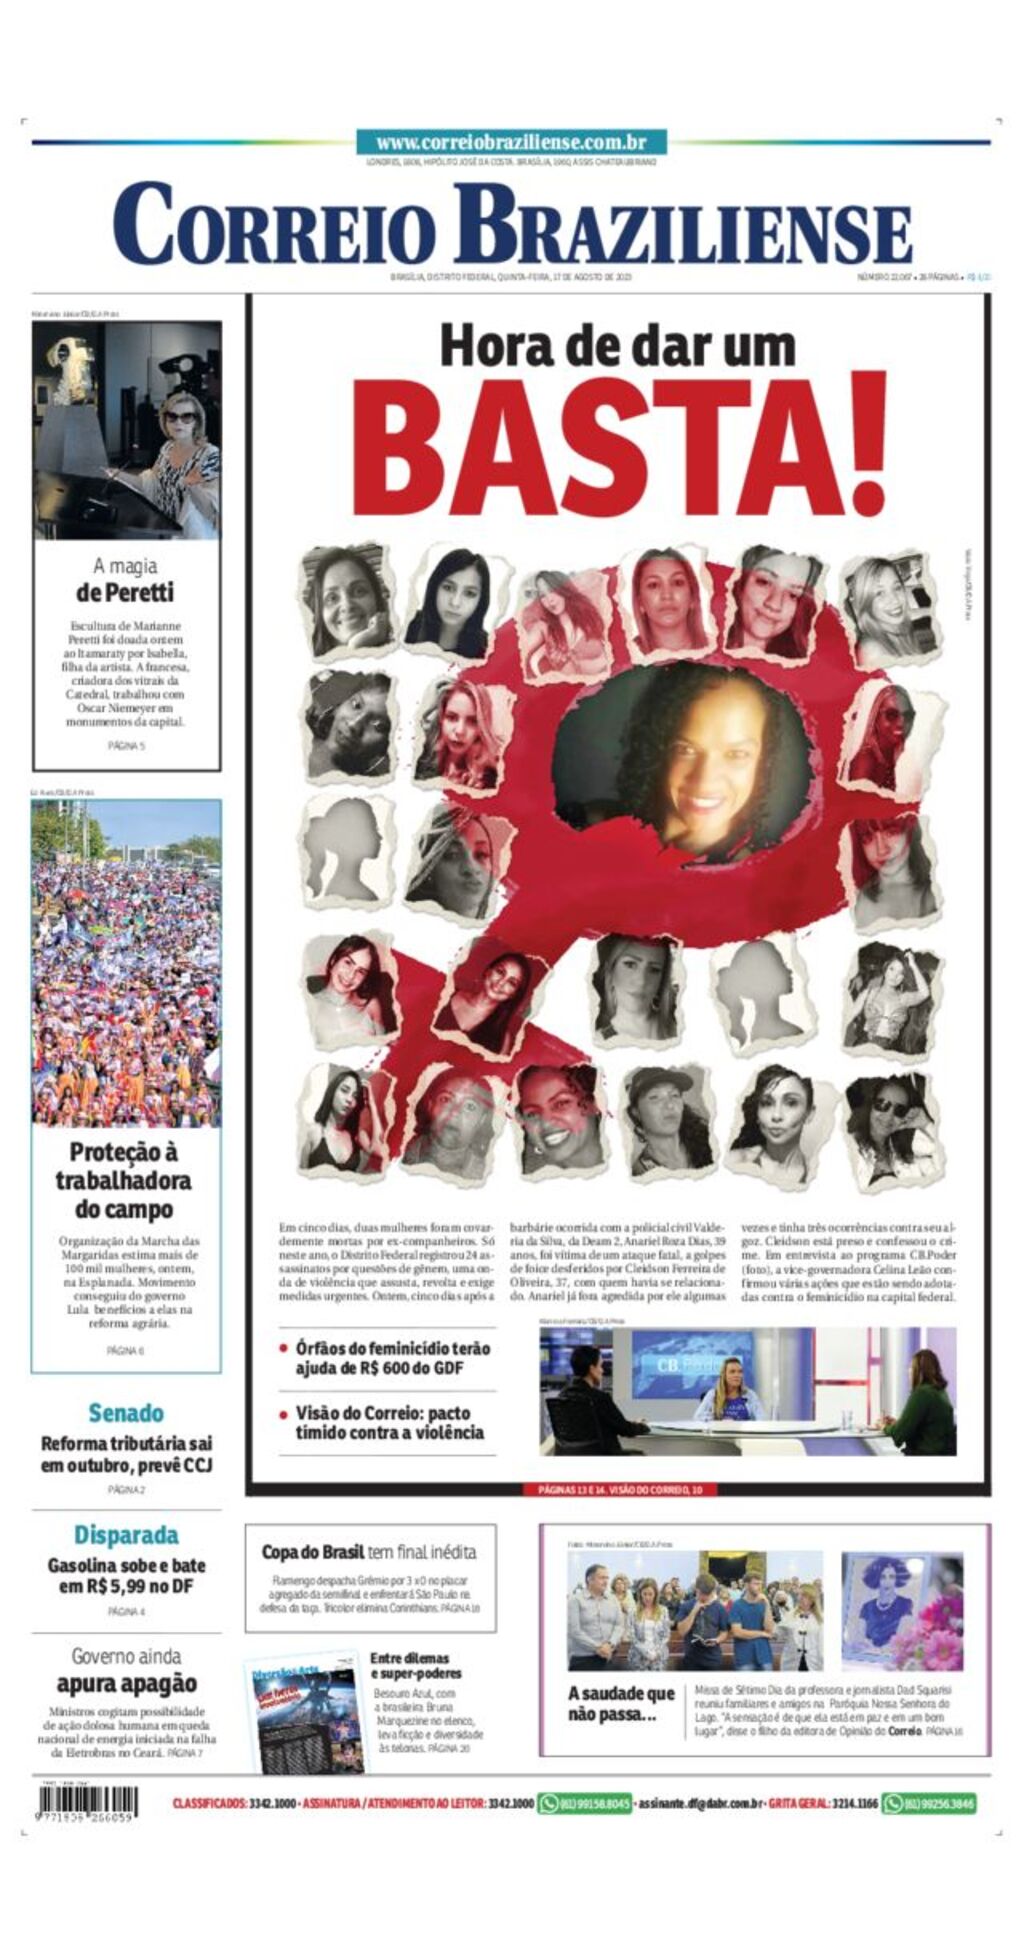 Revista Postais 02 - 2014 by Correios Cultura - Issuu